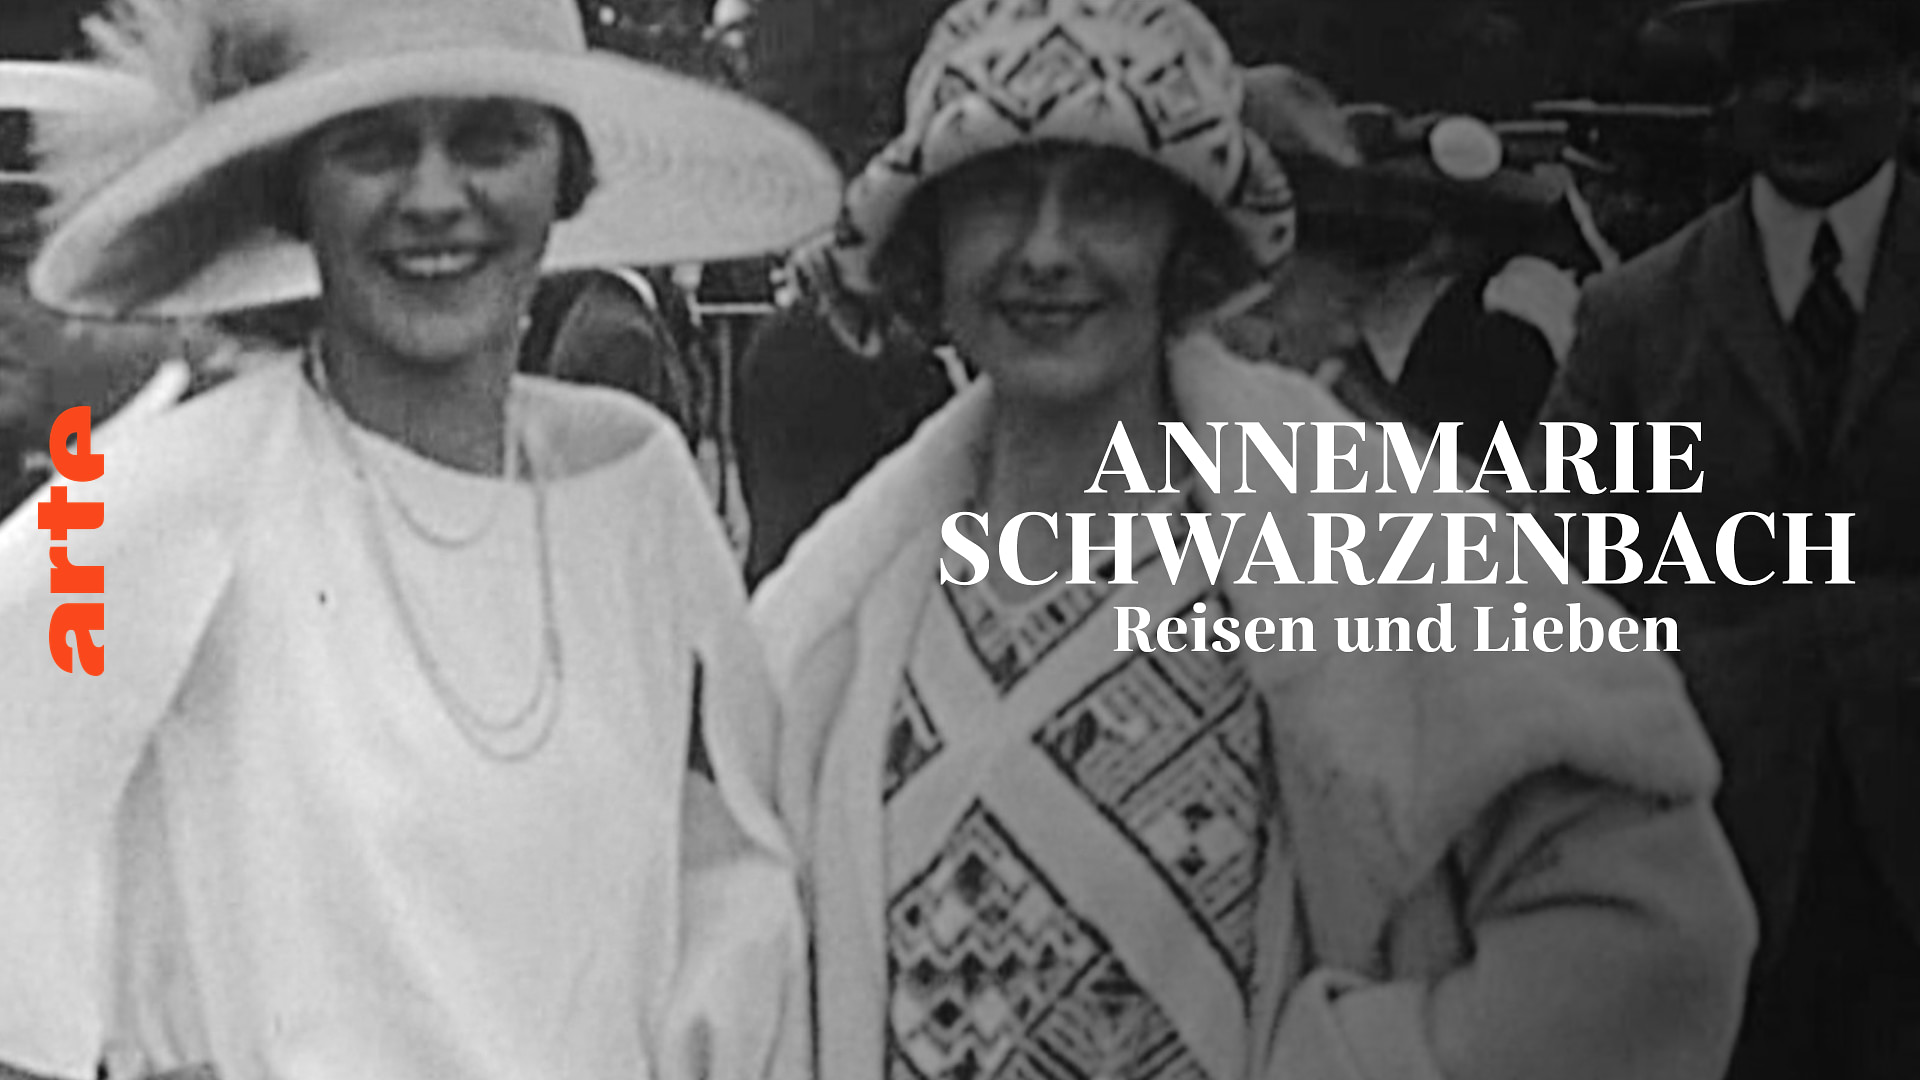 The Lost Ones: Annemarie Schwarzenbach